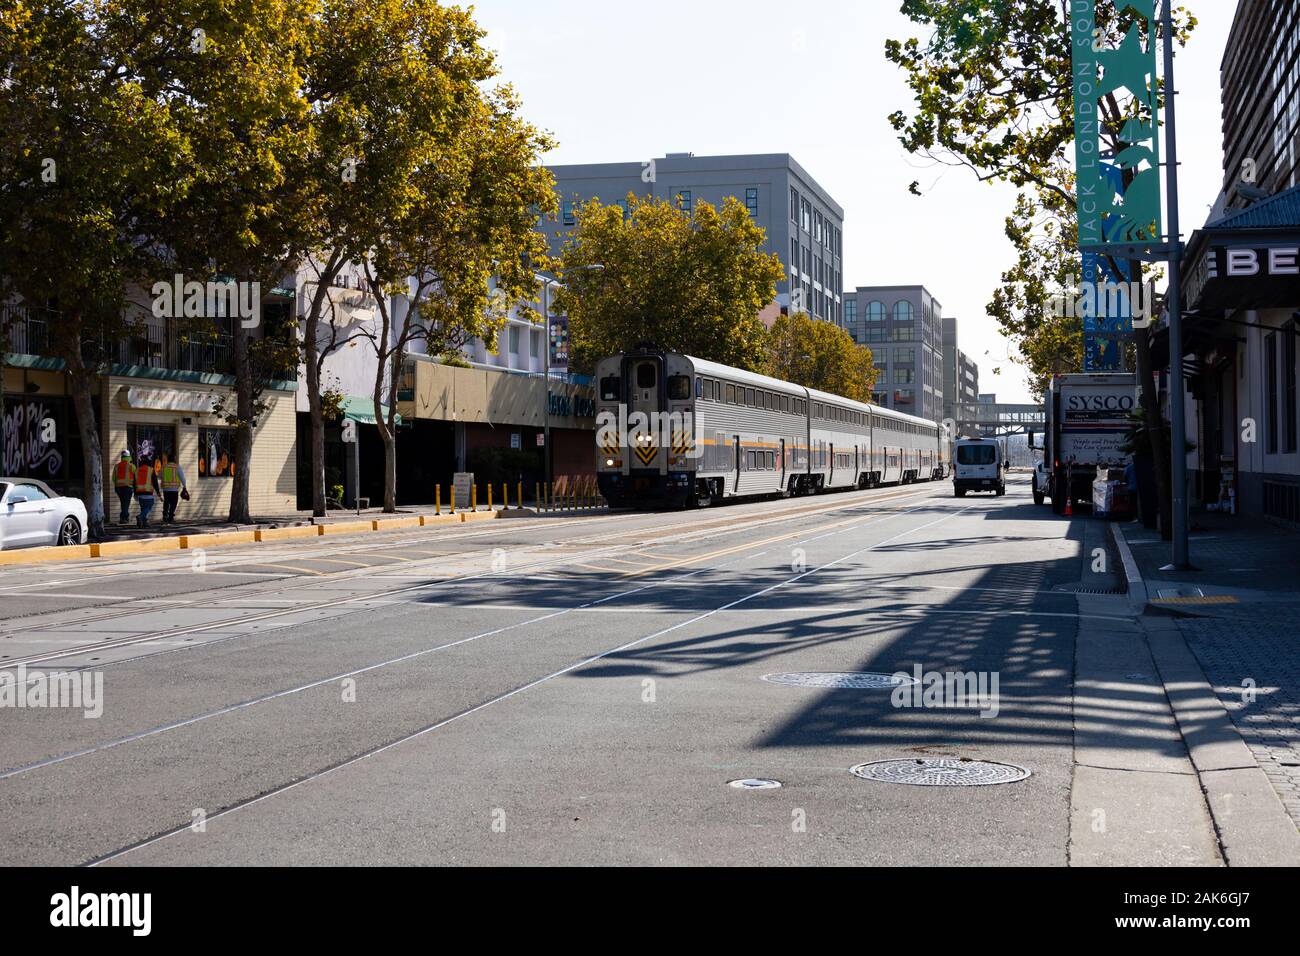 Riesige AmTrak Zug entlang der High Street, Jack London Square, Oakland, Kalifornien, Vereinigte Staaten von Amerika Stockfoto